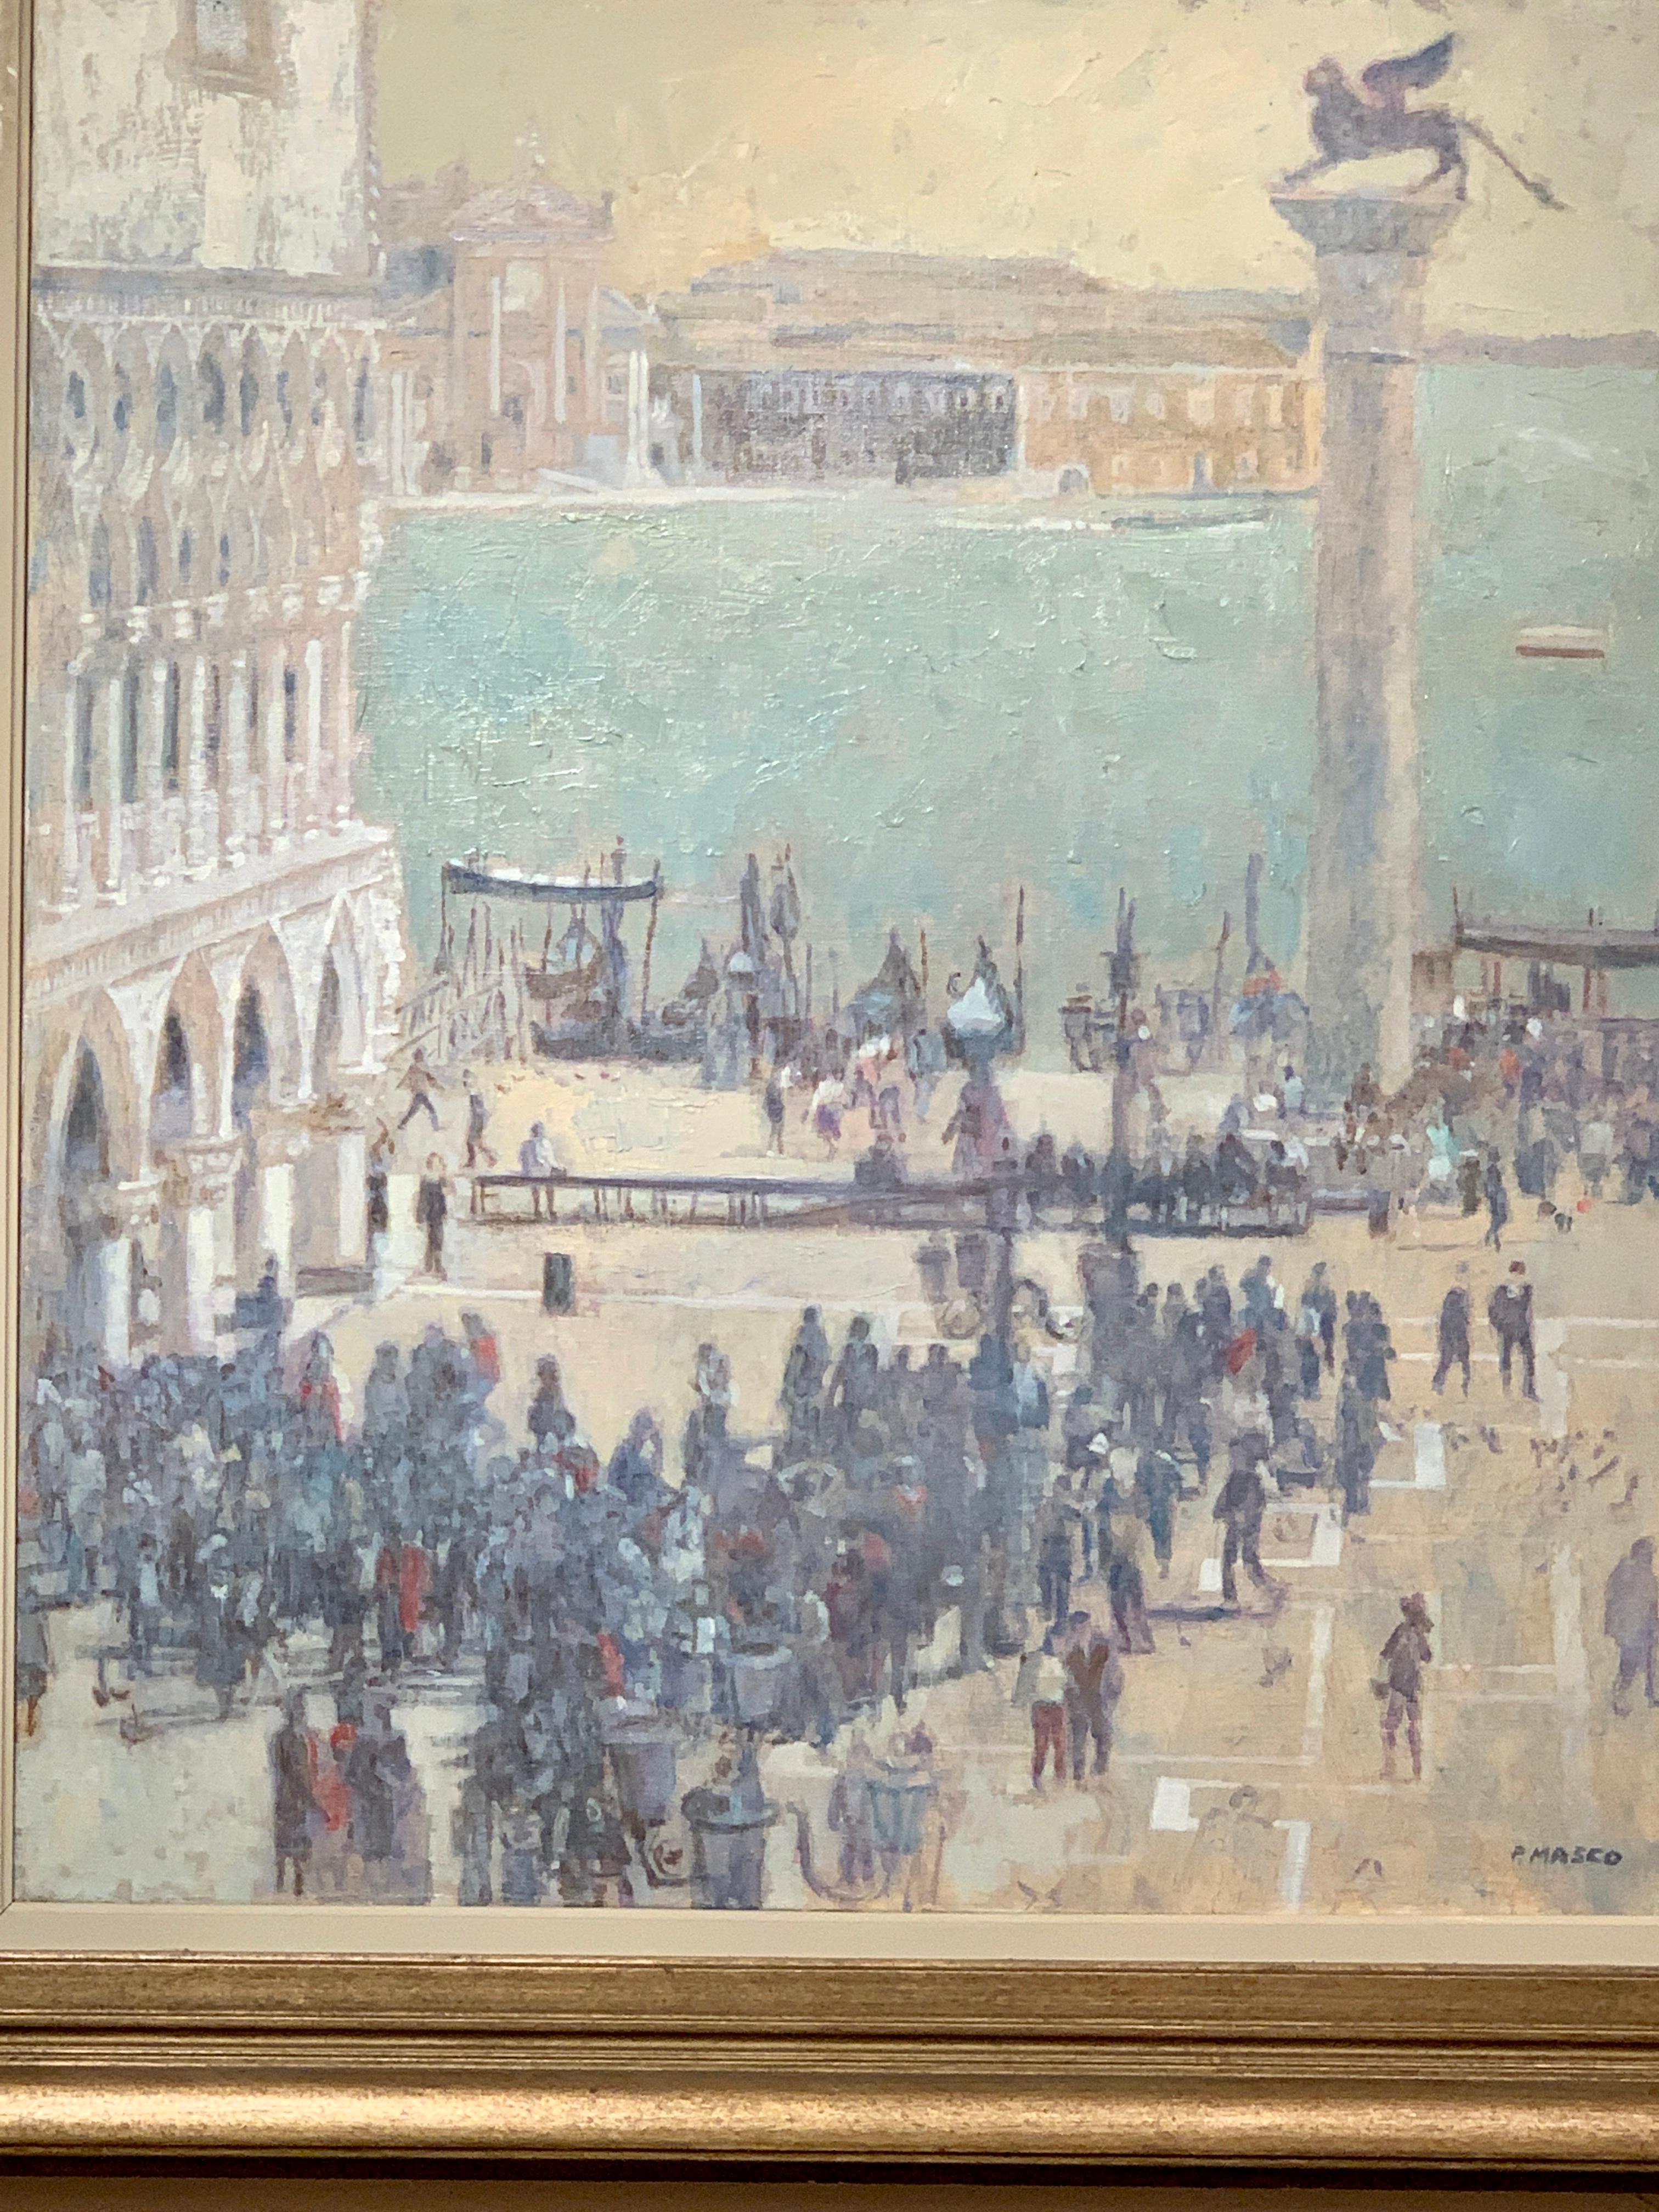 Impressionistische Sicht der Menschen in  St. Marks Square in Venedig (Amerikanischer Impressionismus), Painting, von Pam Masco